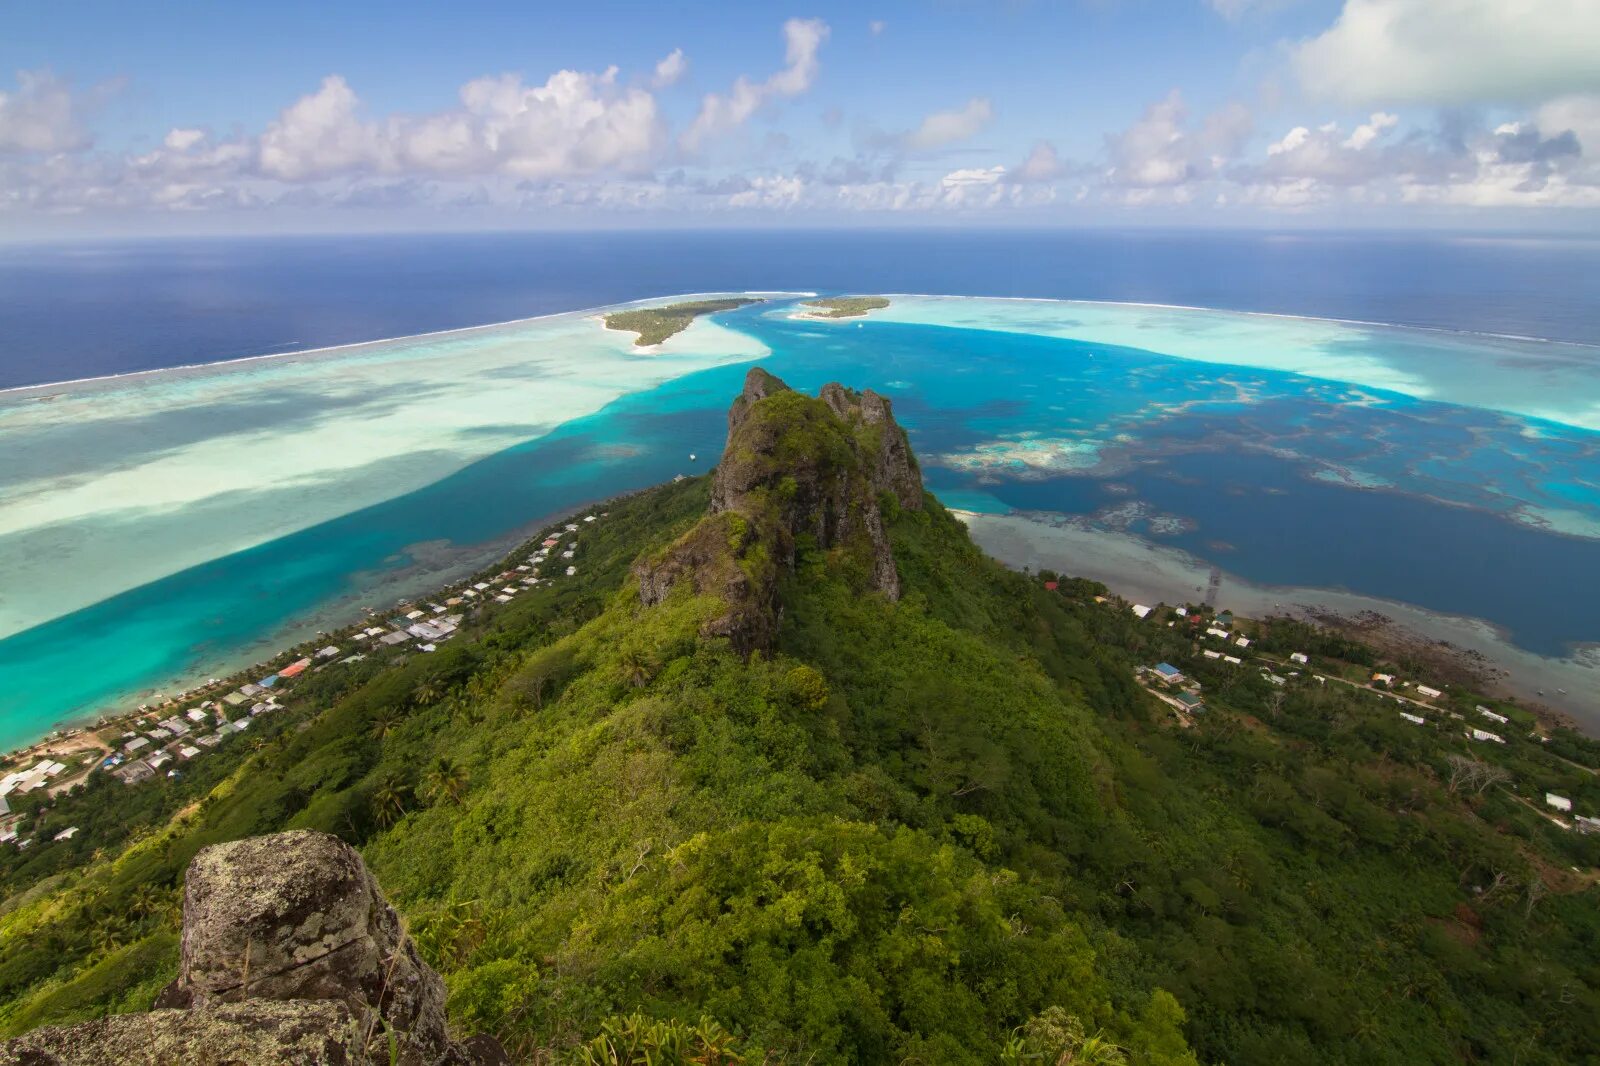 Таити французская Полинезия. Таити остров архипелаг. Острова Туамоту французская Полинезия. Французская Полинезия (Polynesie francaise) и остров Таити (Tahiti).